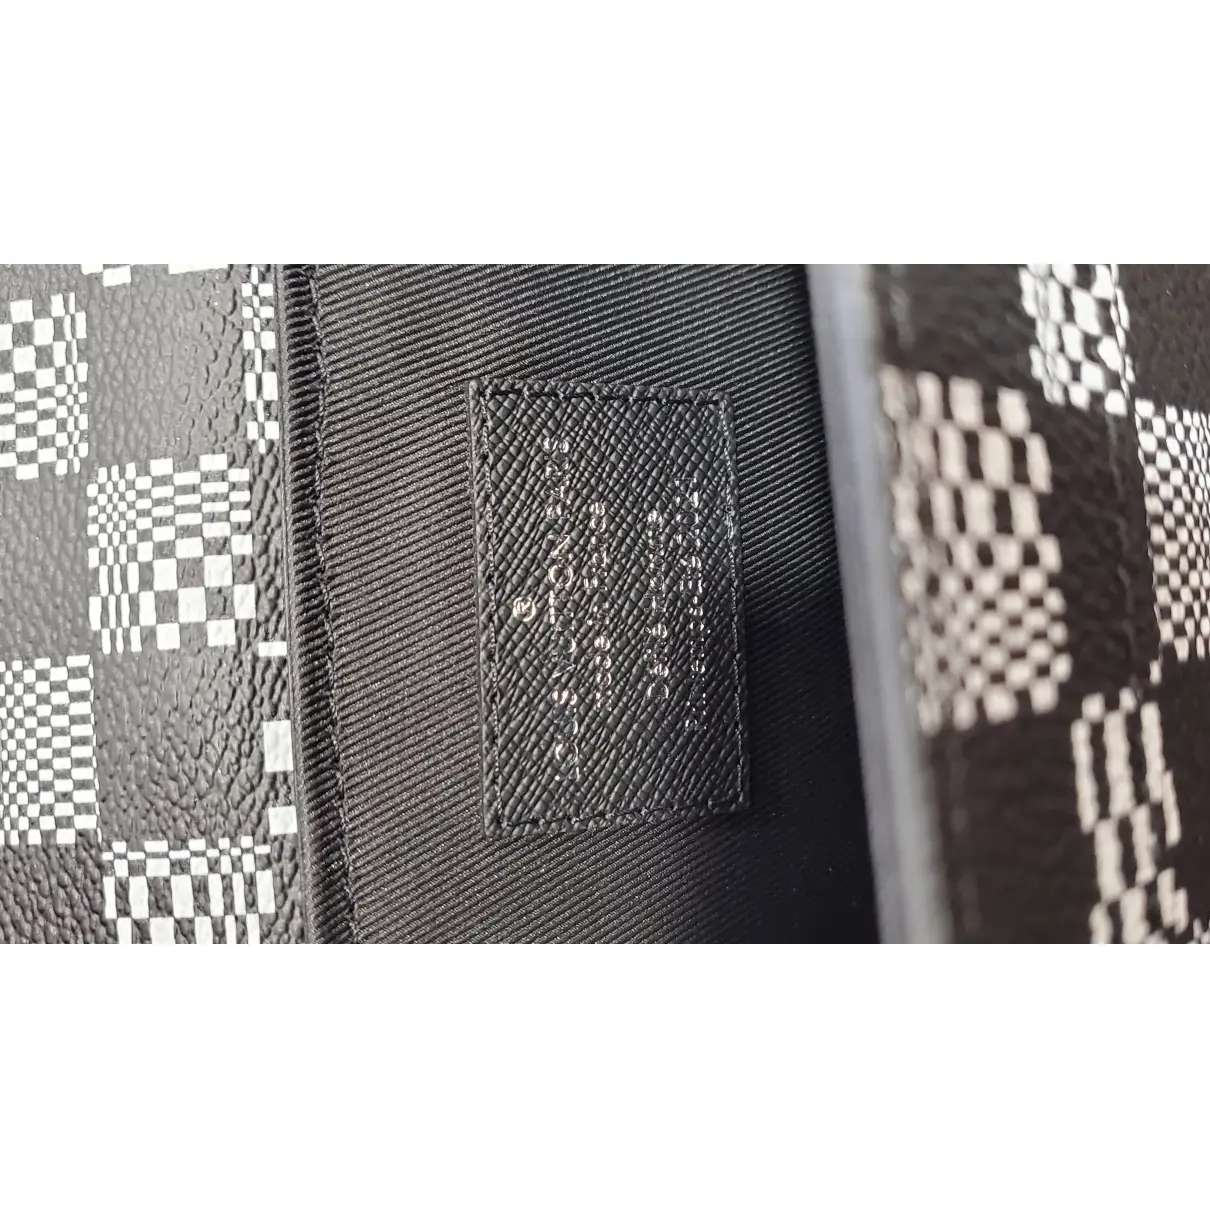 Steamer cloth bag Louis Vuitton